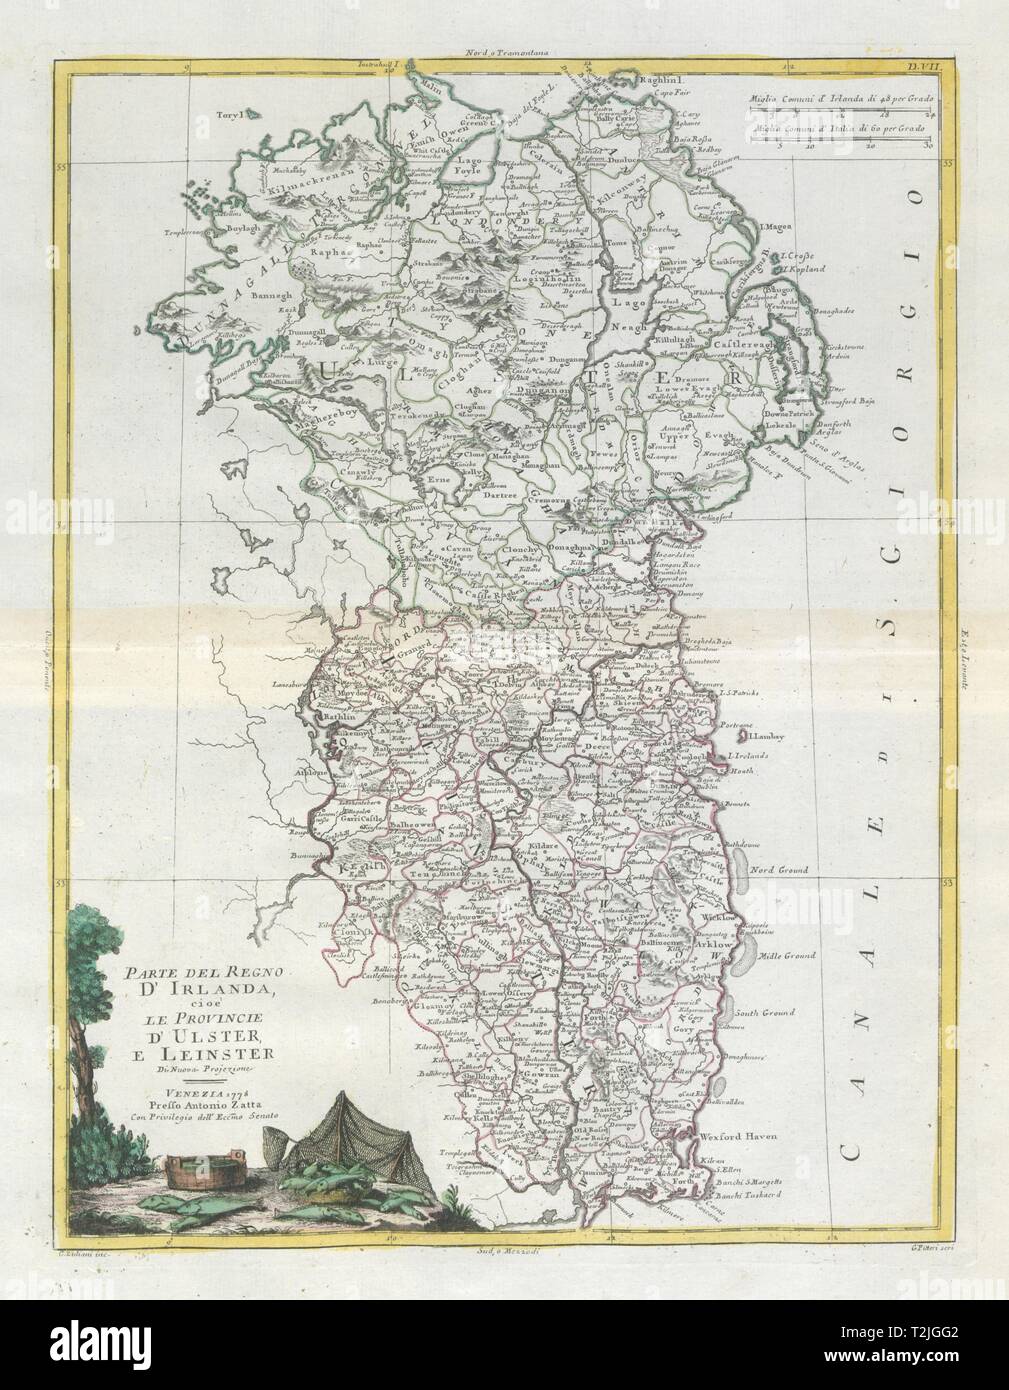 'Parte del Regno d'Irlanda… Ulster e Leinster'. Eastern Ireland. ZATTA 1779 map Stock Photo